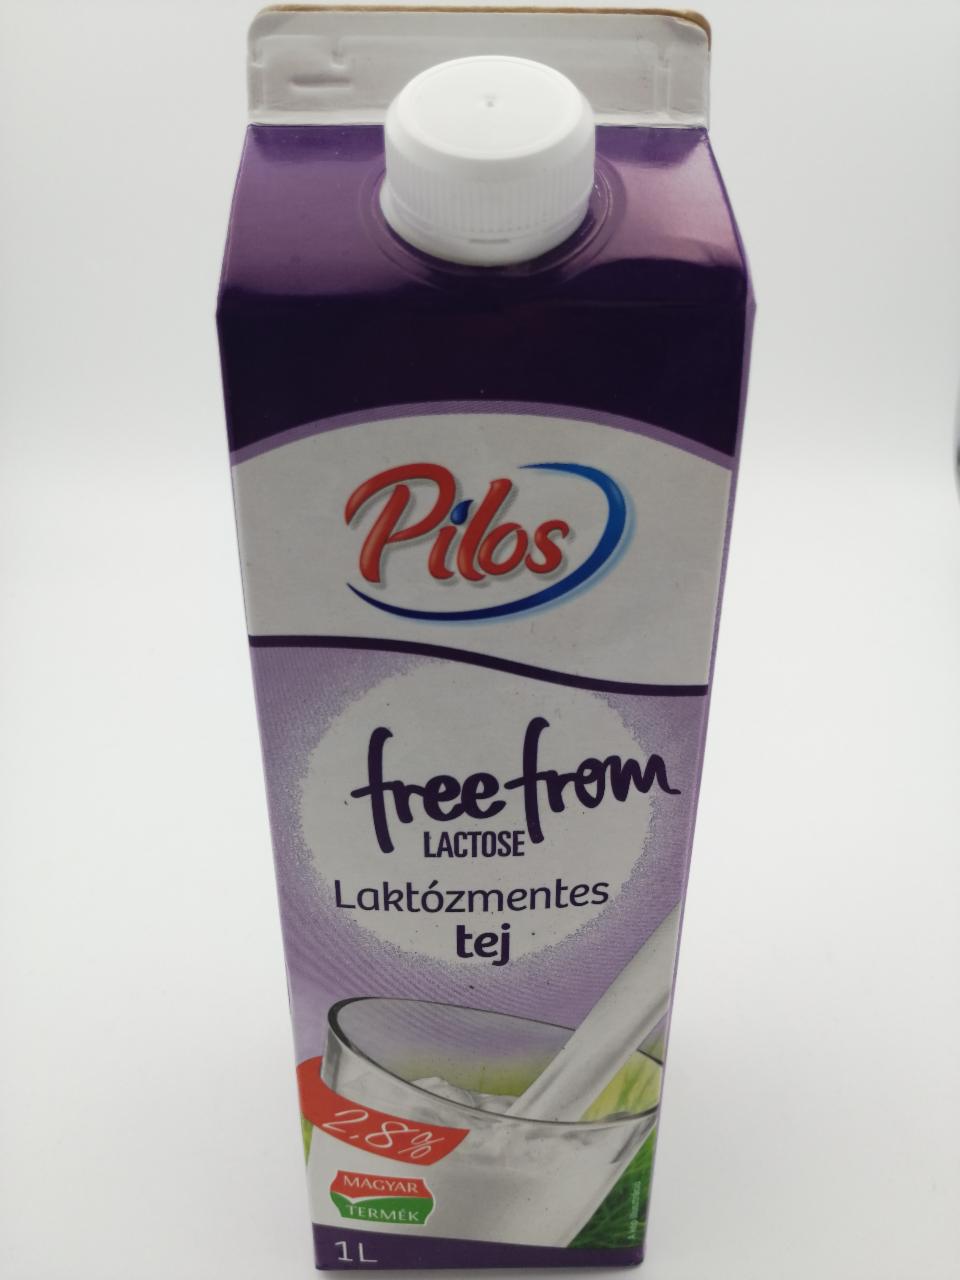 Képek - Free from lactose tej 2,8% Pilos